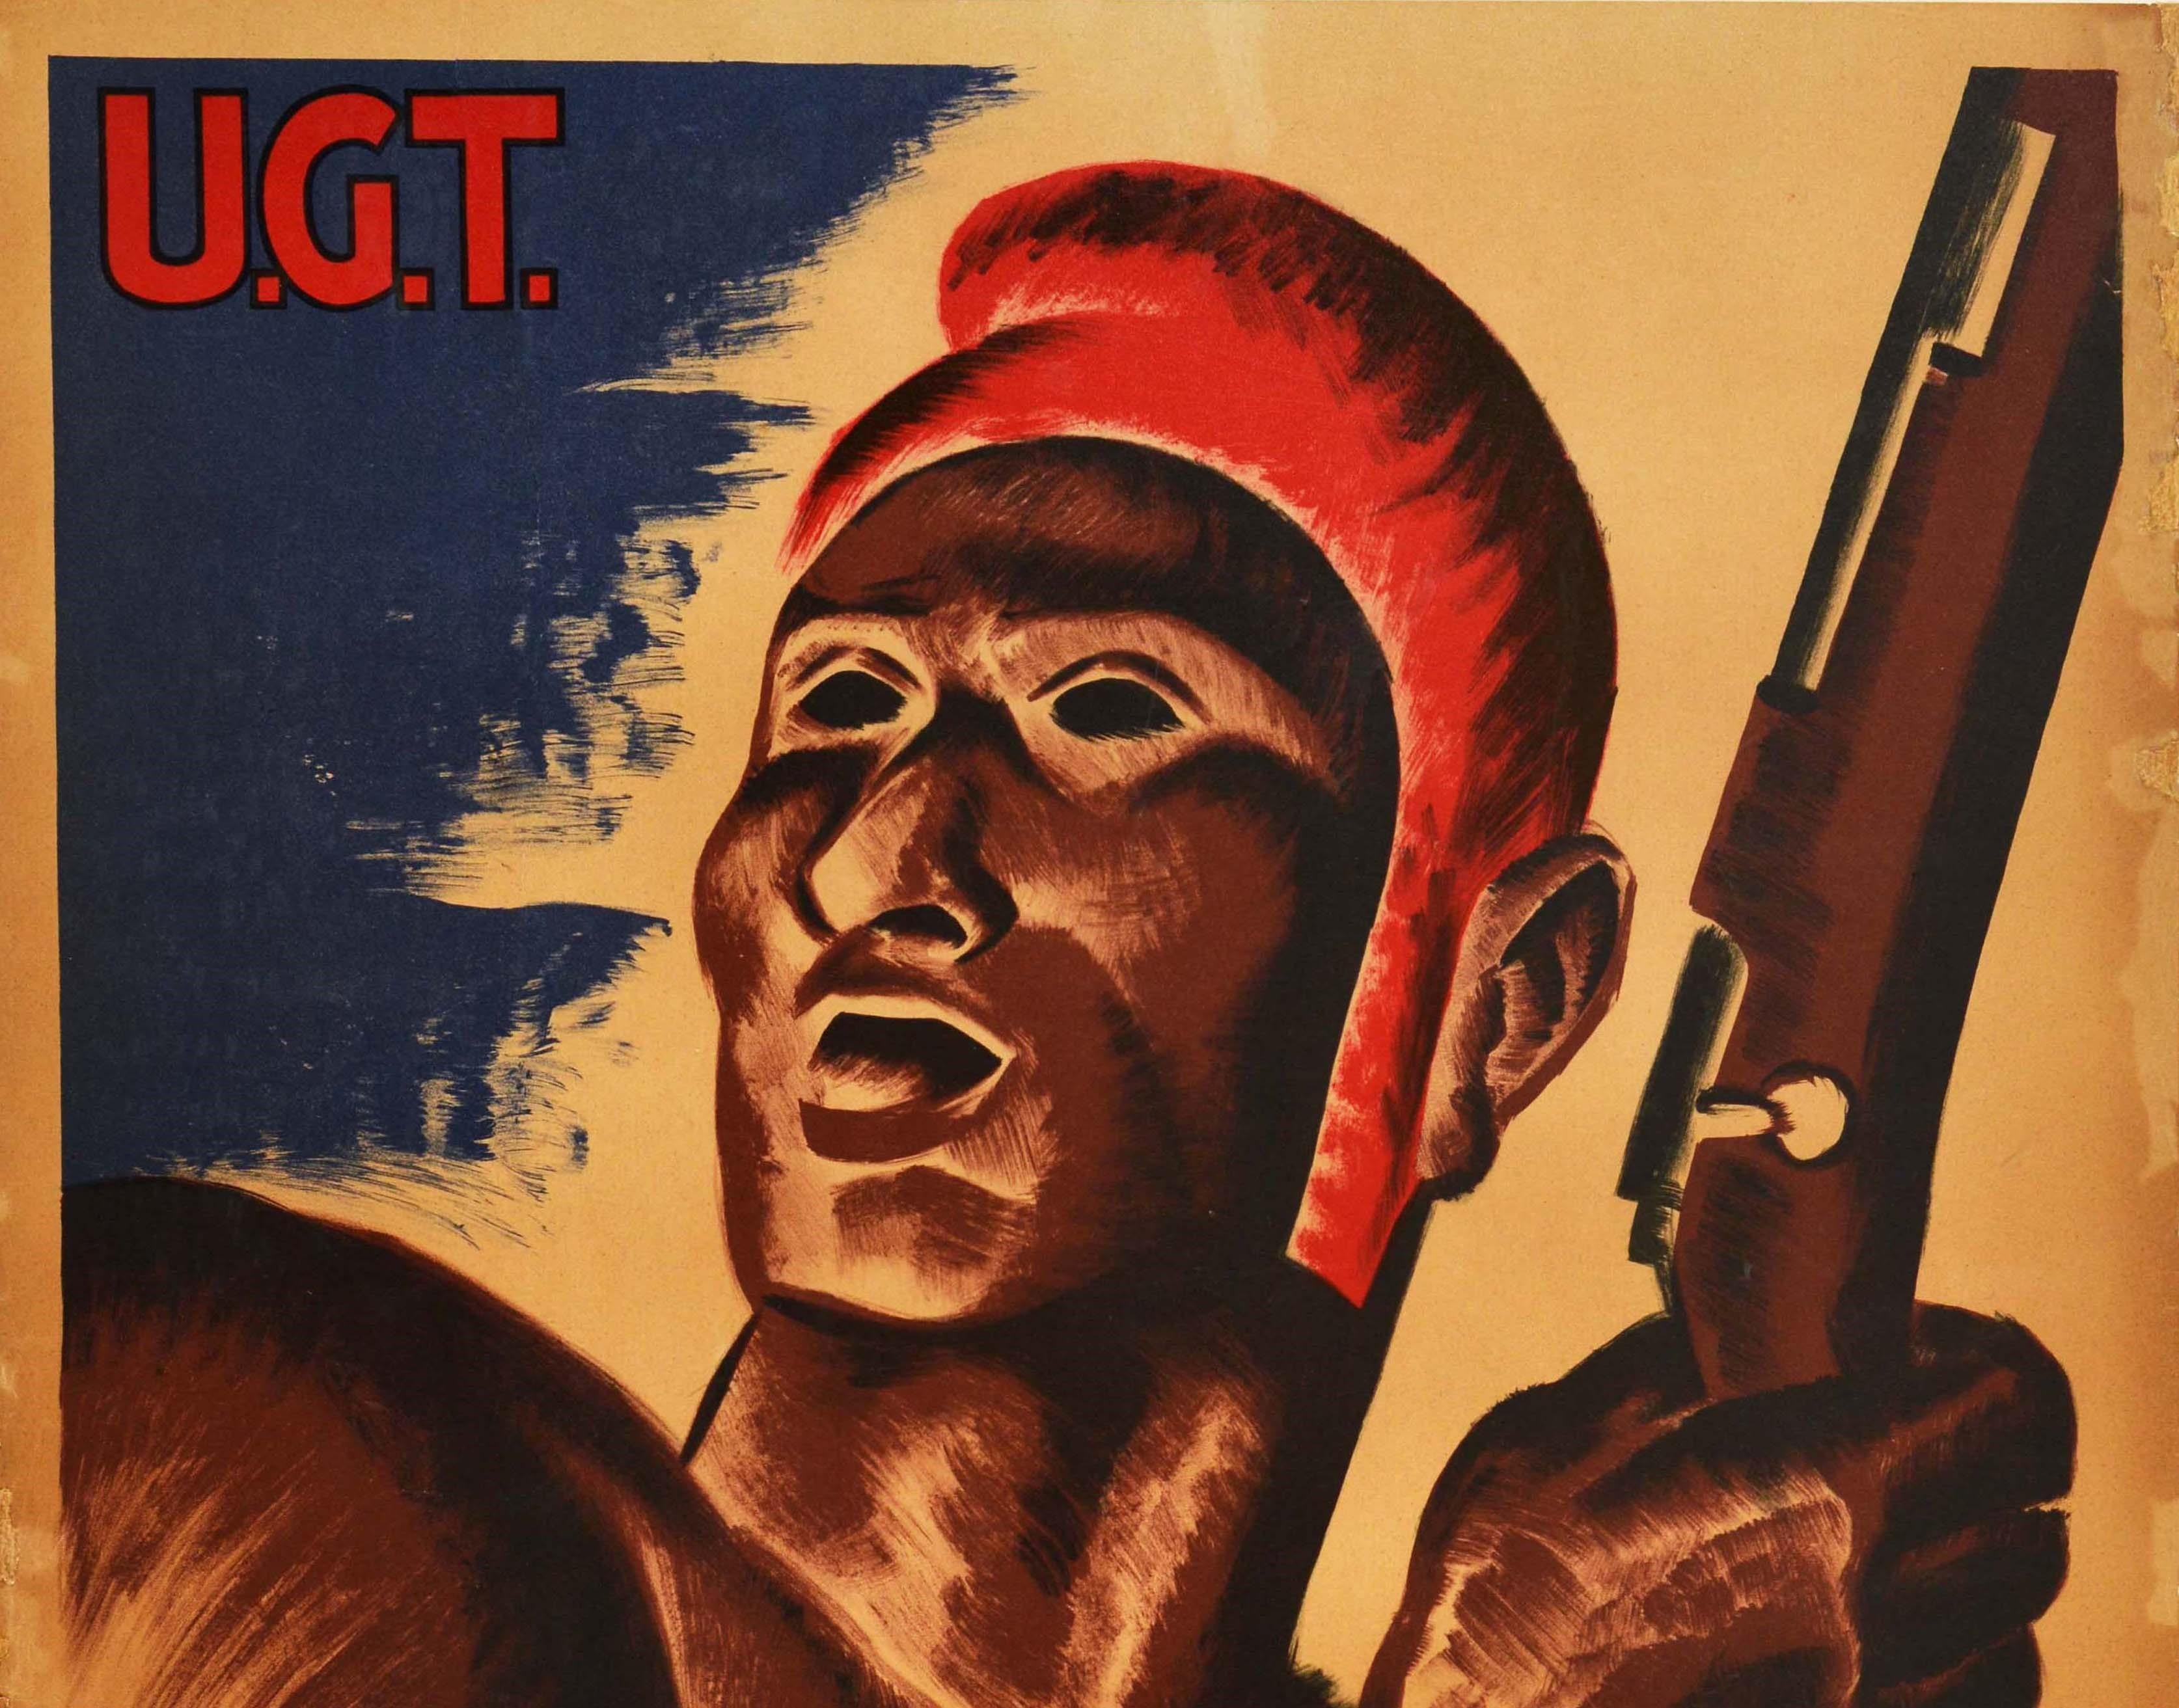 Original Poster aus dem Spanischen Bürgerkrieg - Arbeiter! Alle gegen Faschismus / Treballadors! Tots contra el feixisme - mit einer dynamischen, mit einem Gewehr bewaffneten Kriegerfigur über dem fettgedruckten Text und dem Logo der Union of